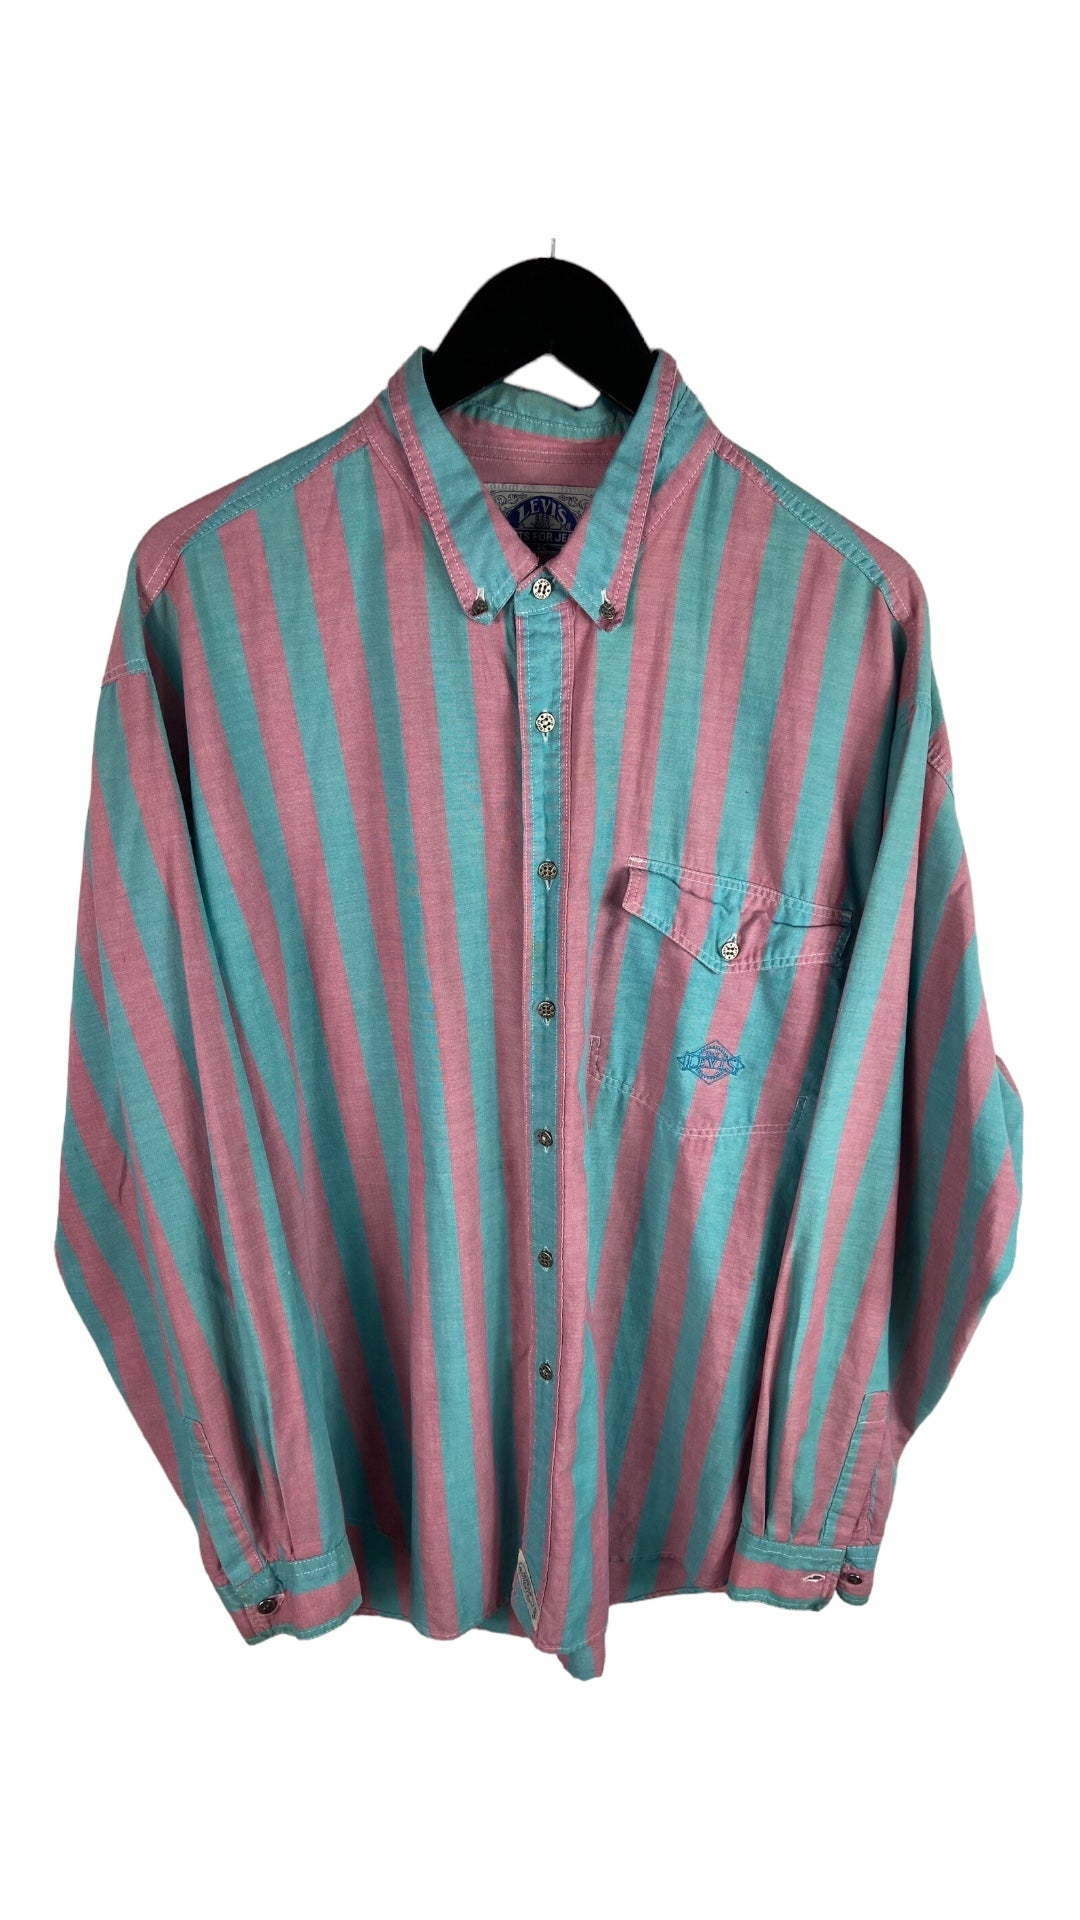 VTG Levis Strauss Cotton Candy Striped Button Up Shirt Sz XL